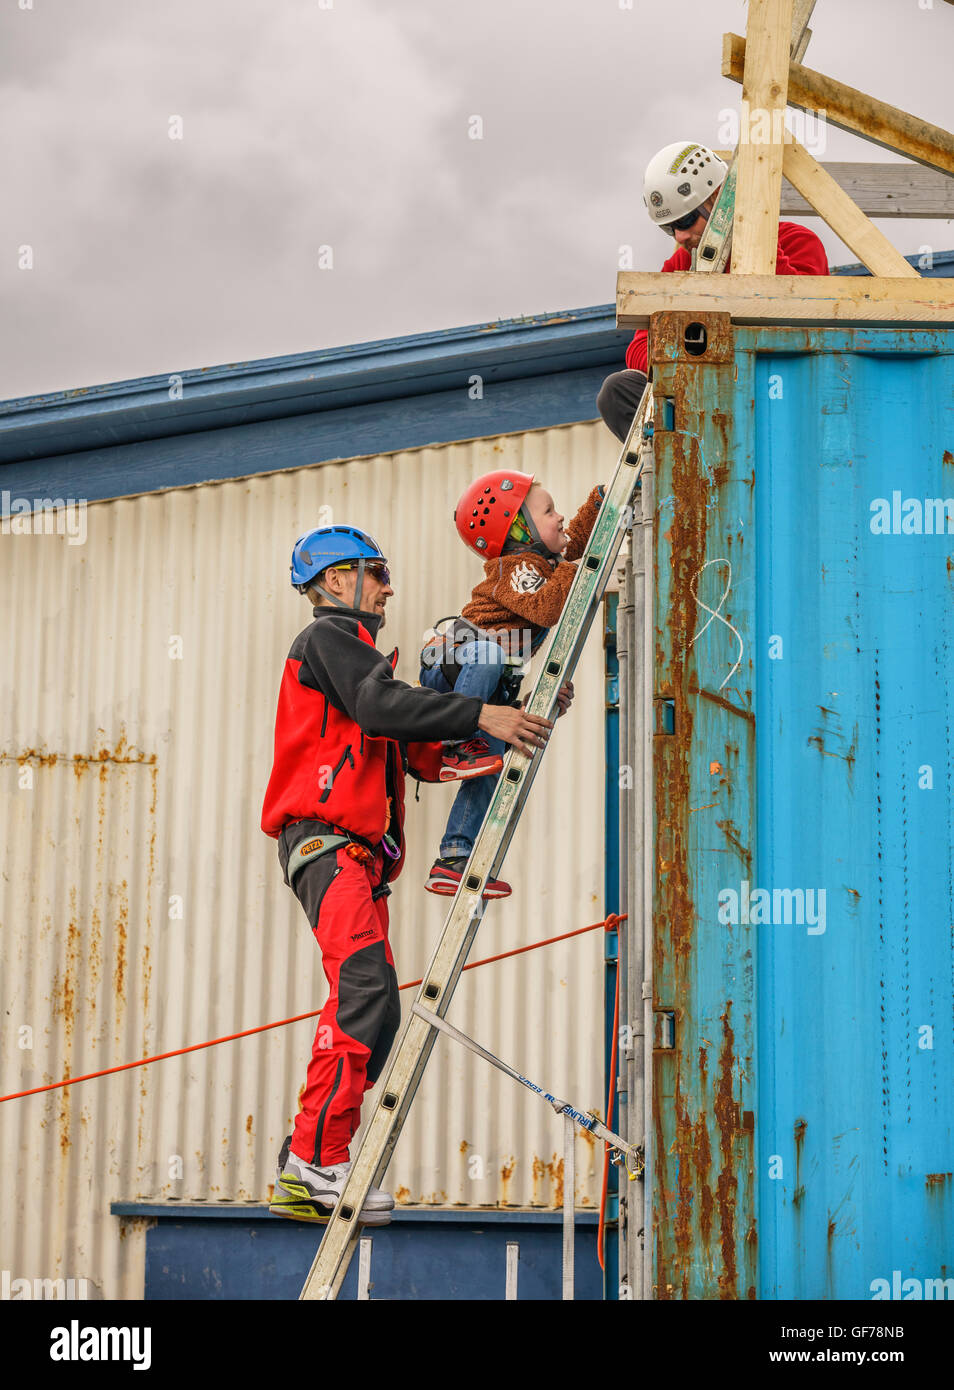 Junge klettert die Leiter zum abstoßen, See-Container auf der jährlichen Seemann Festival, Hafnarfjordur, Island Stockfoto